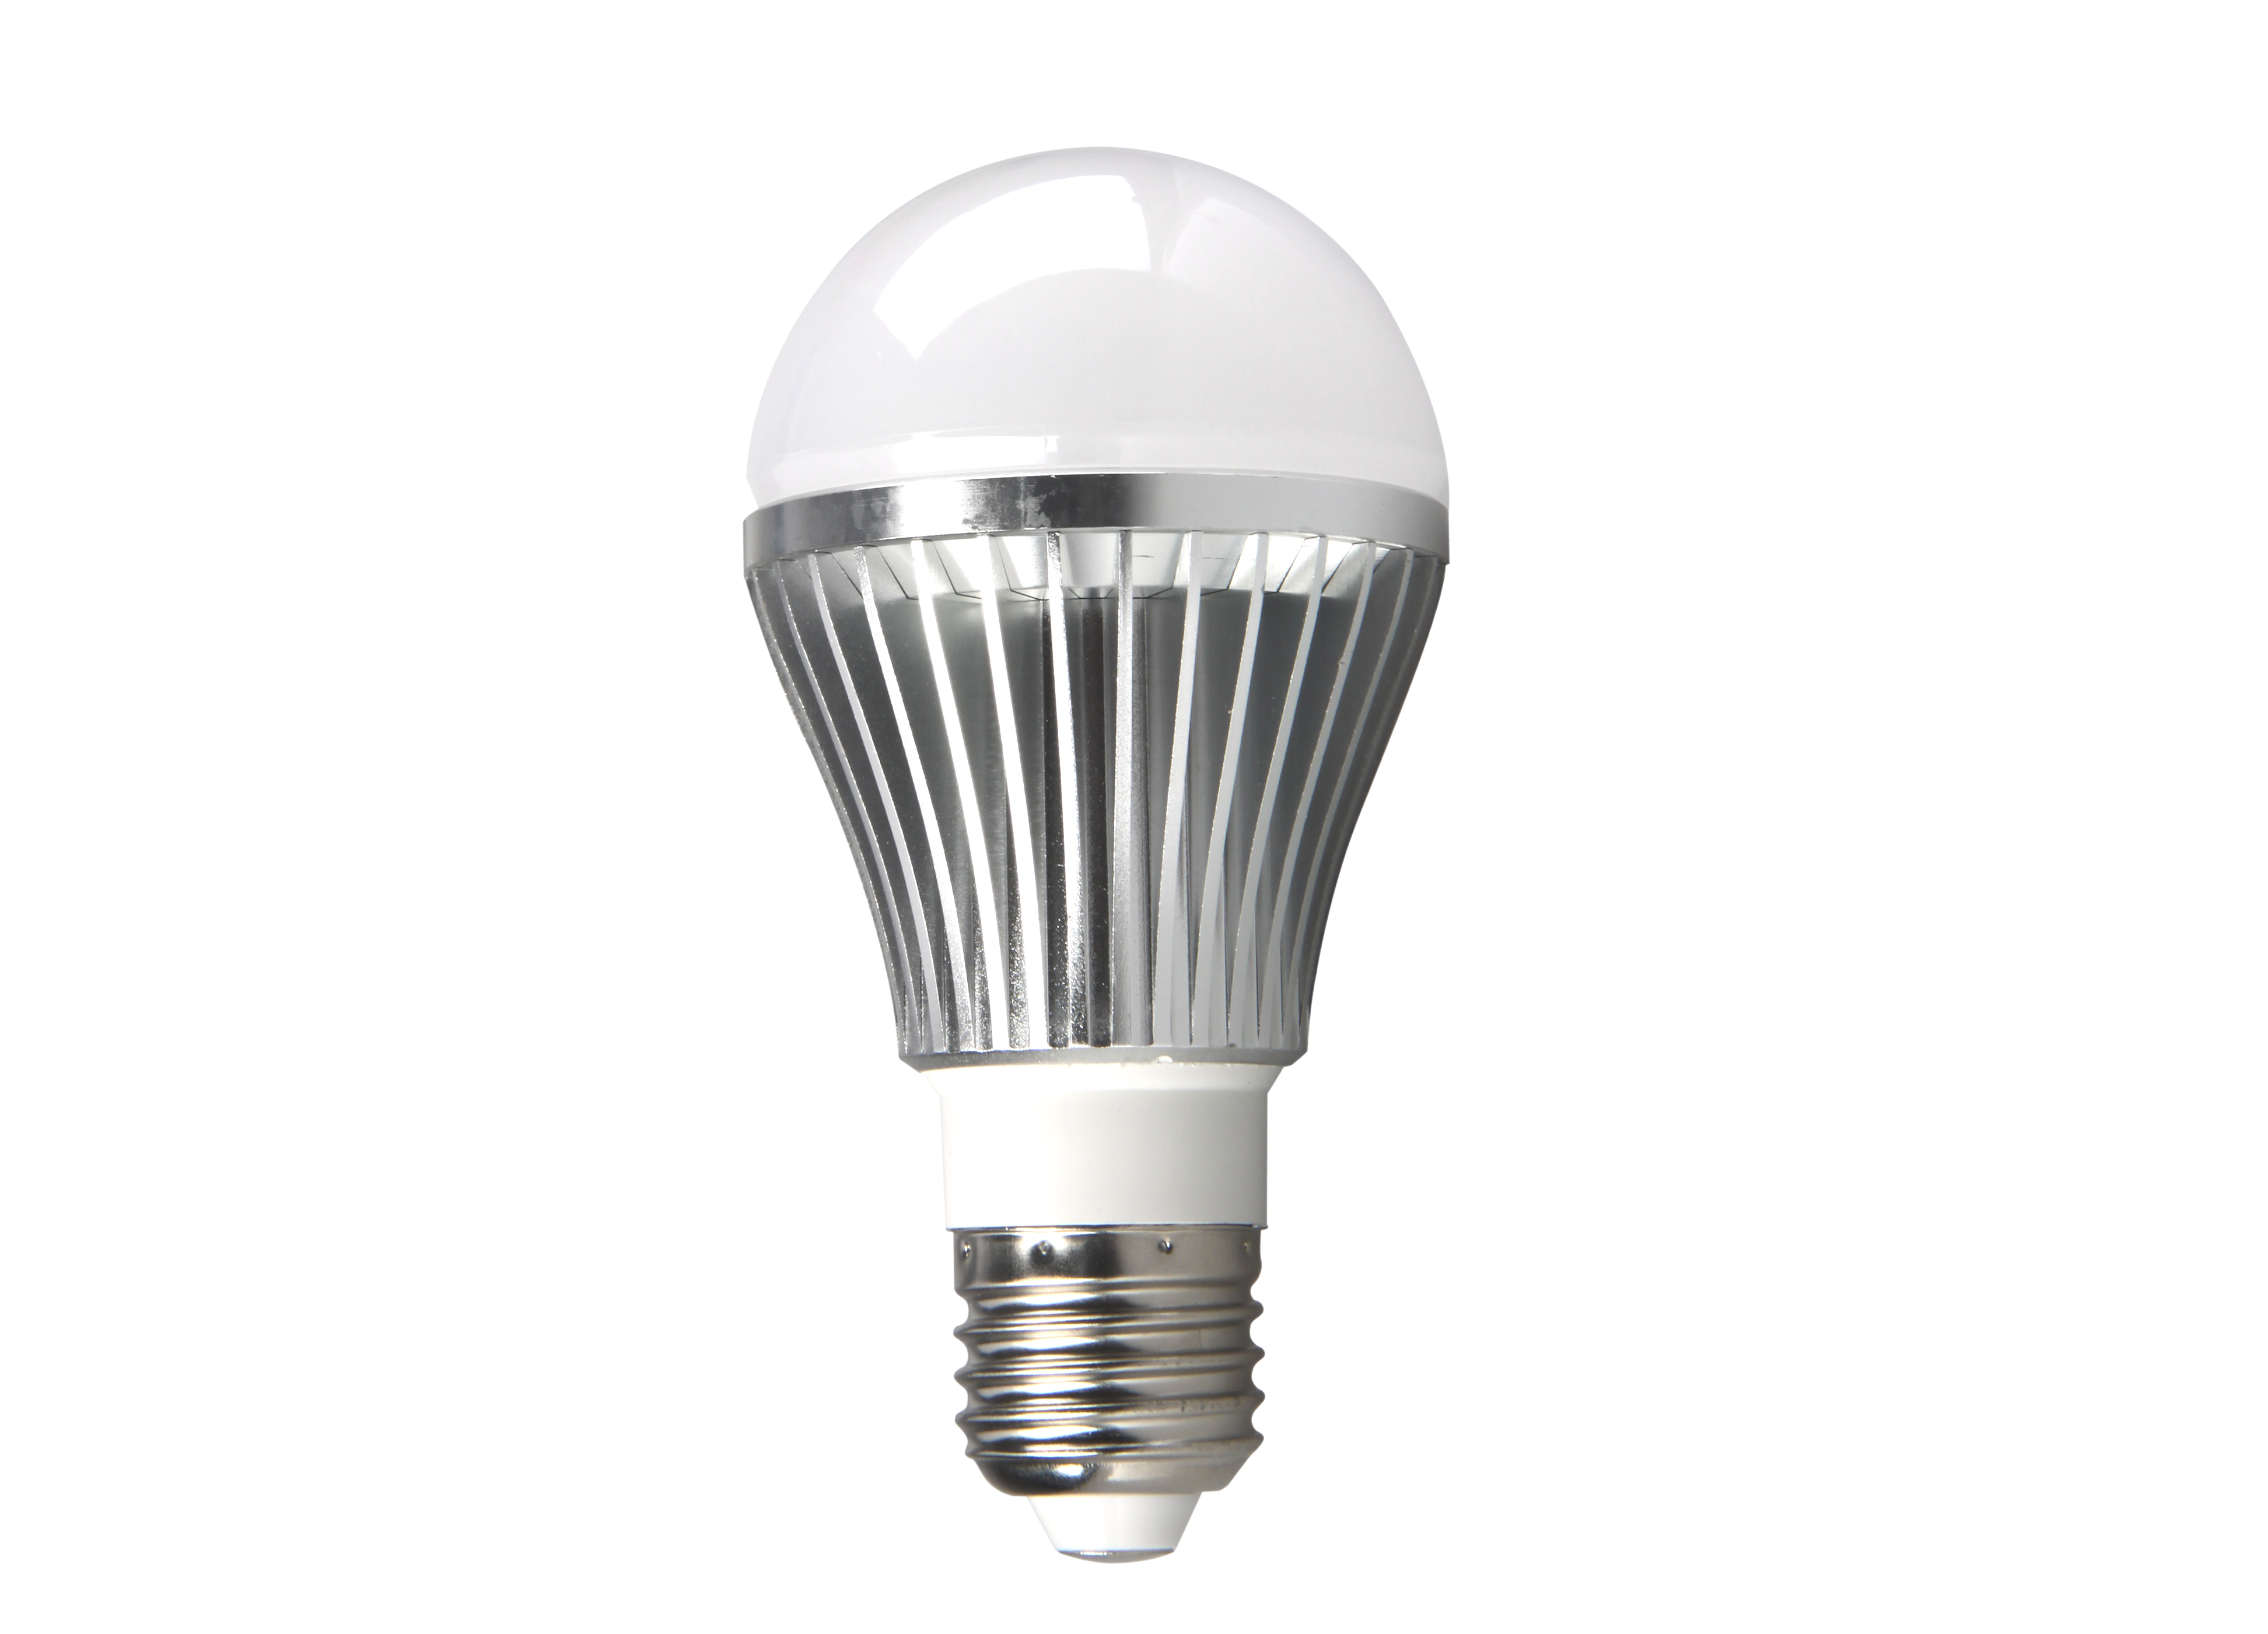 4 Watt LED Bulb for Harmonic analysis using Embuilt SPEA-1